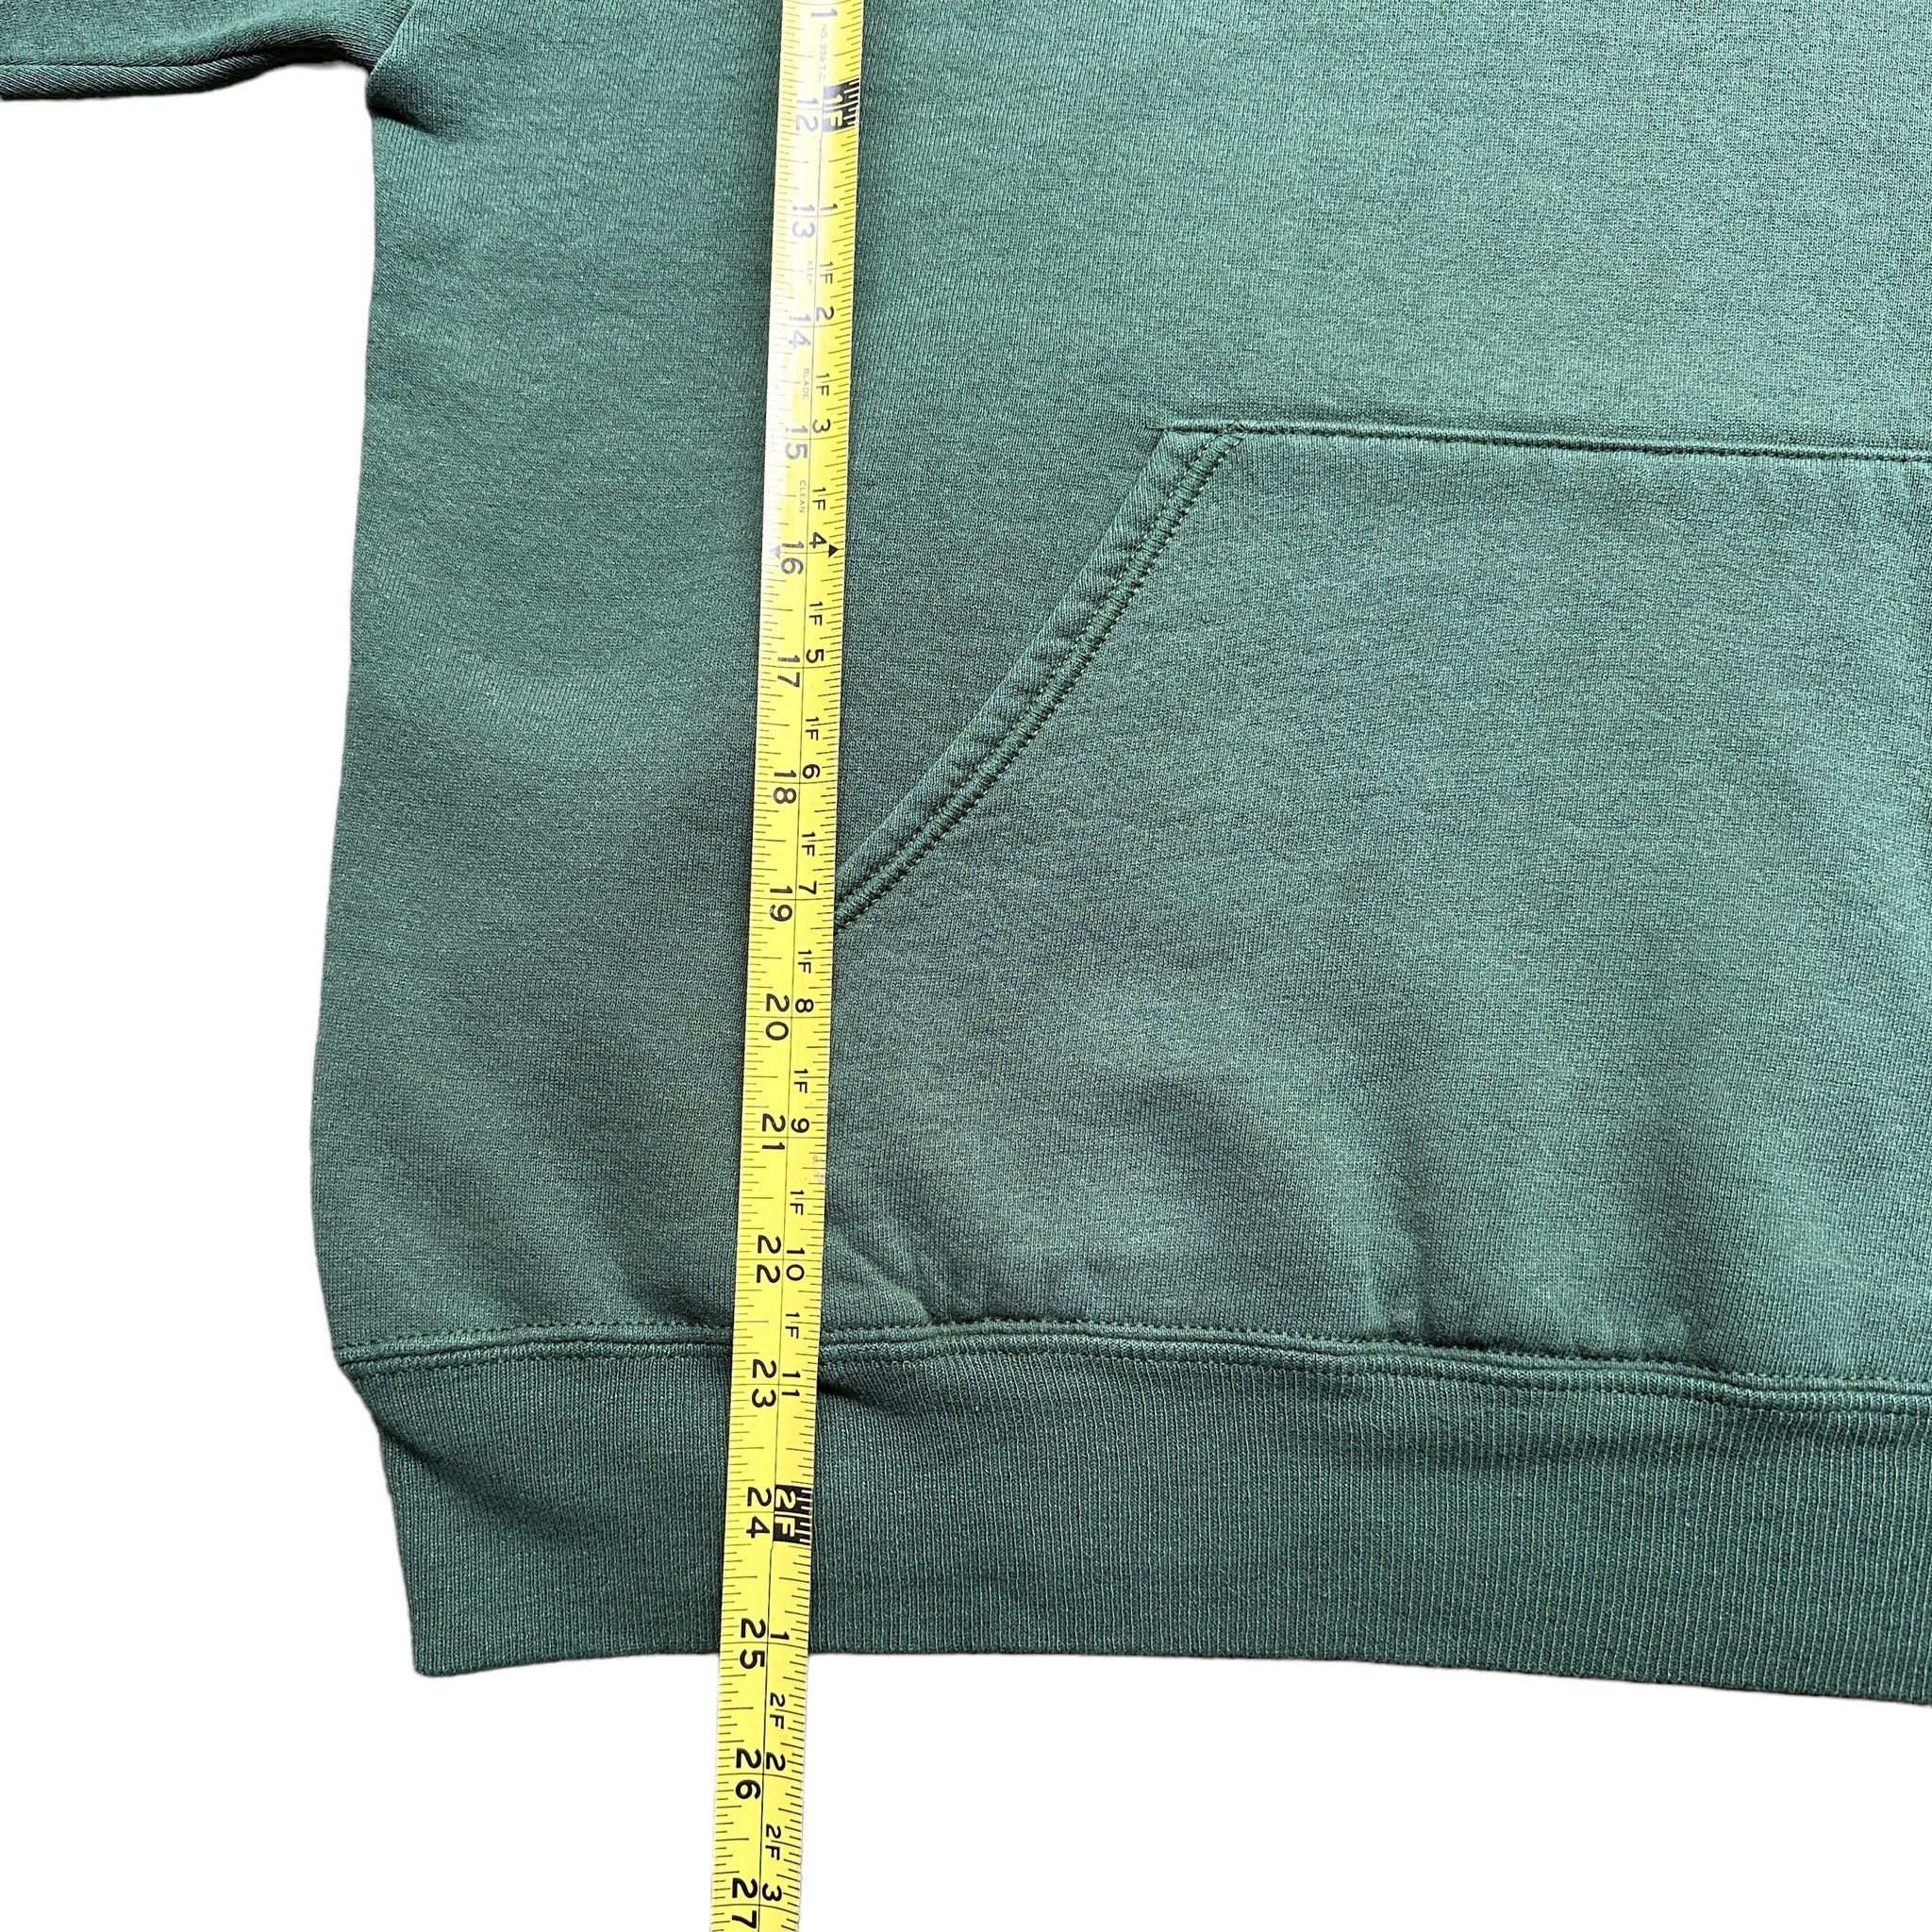 90s Super weight hooded sweatshirt hoodie large fit